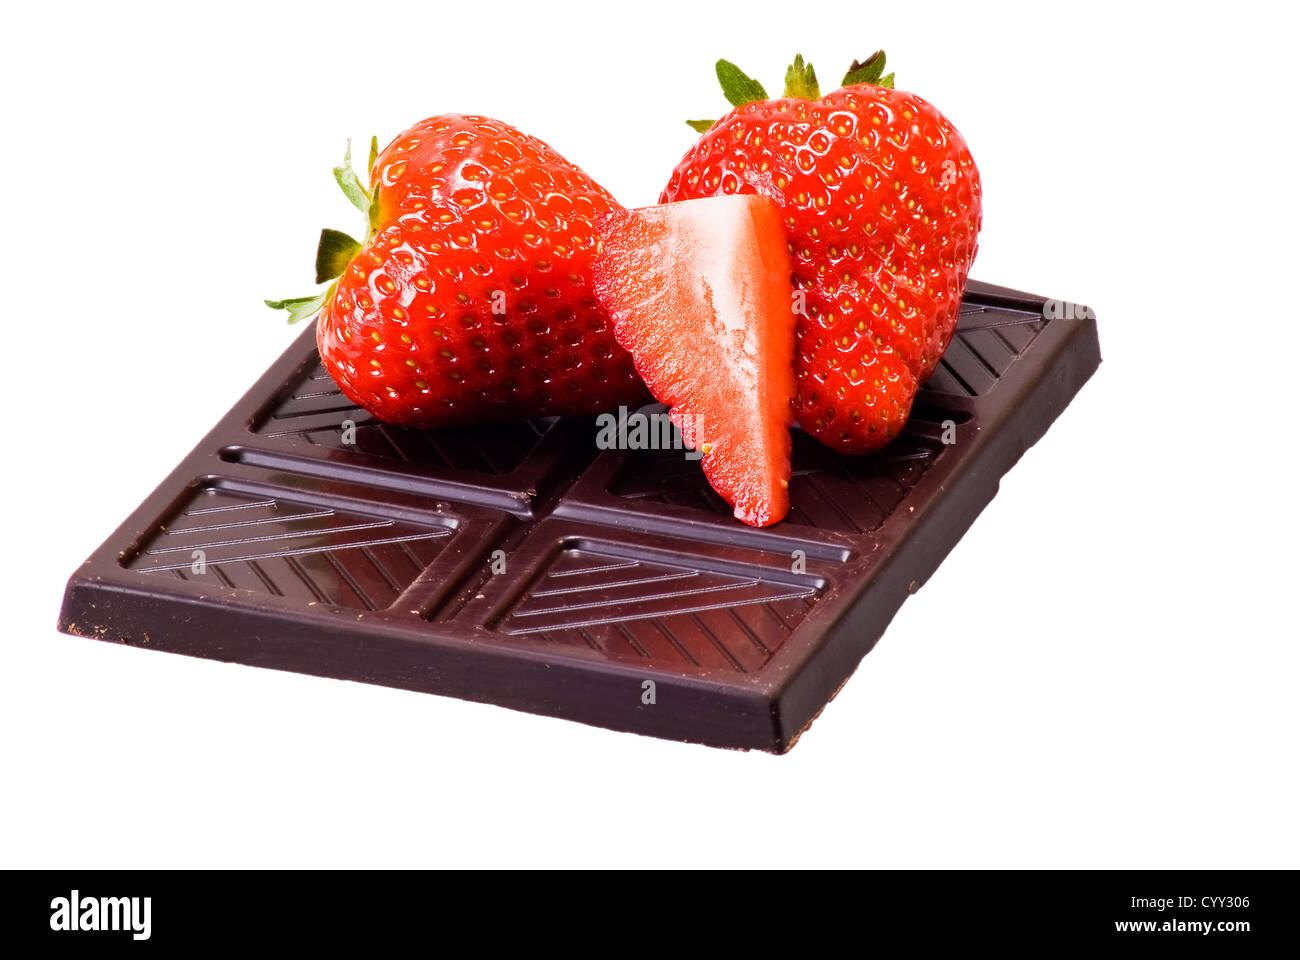 Cioccolato fondente e fragole su sfondo bianco Foto Stock